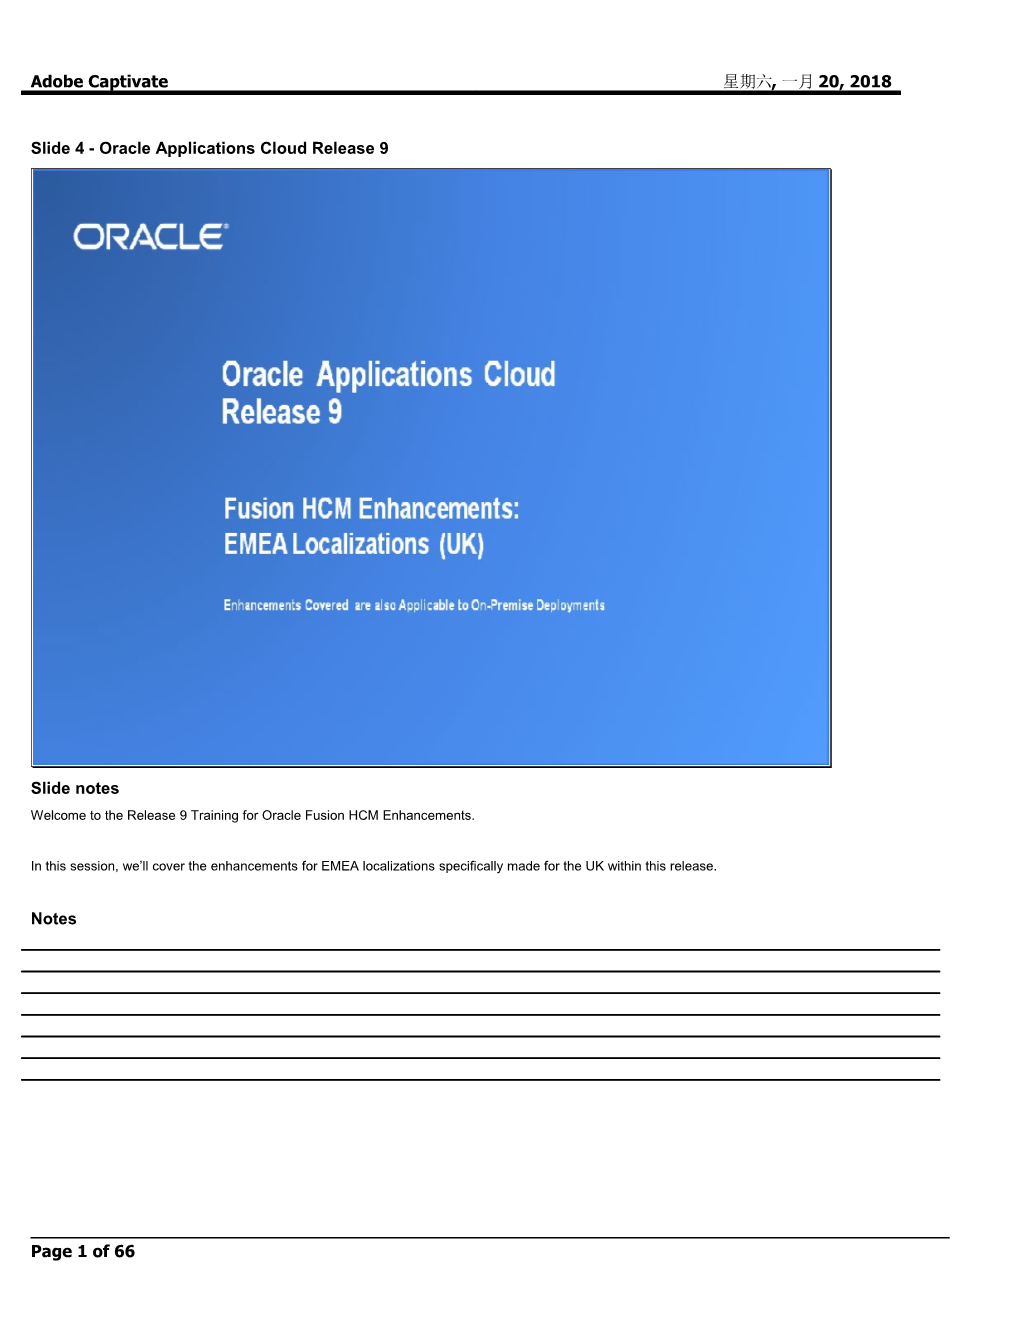 Slide 4 - Oracle Applications Cloud Release 9